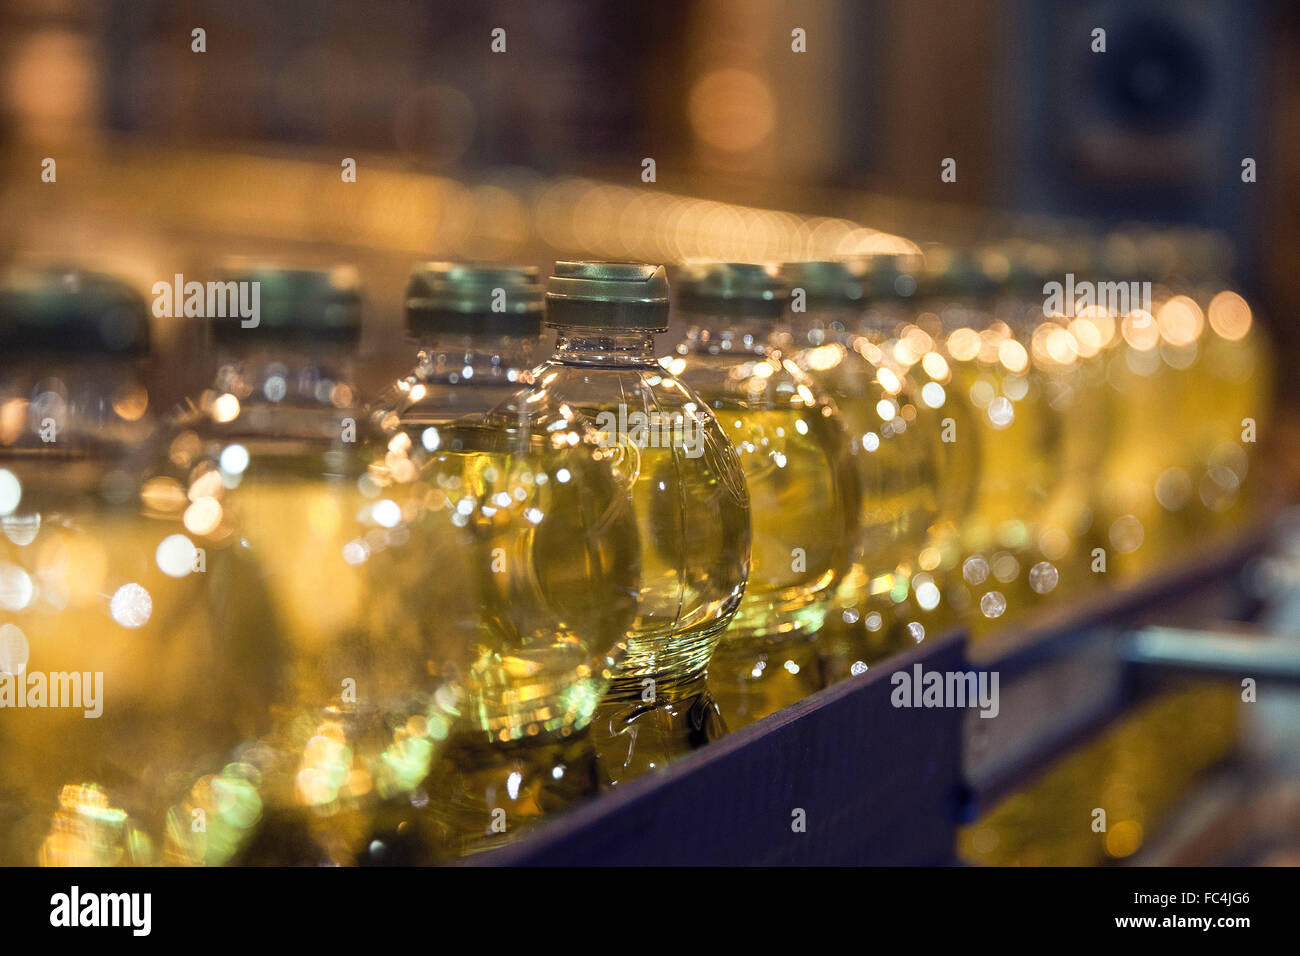 Detalhe de envase de garrafas de óleo vegetal de soja em agroindústria Stock Photo